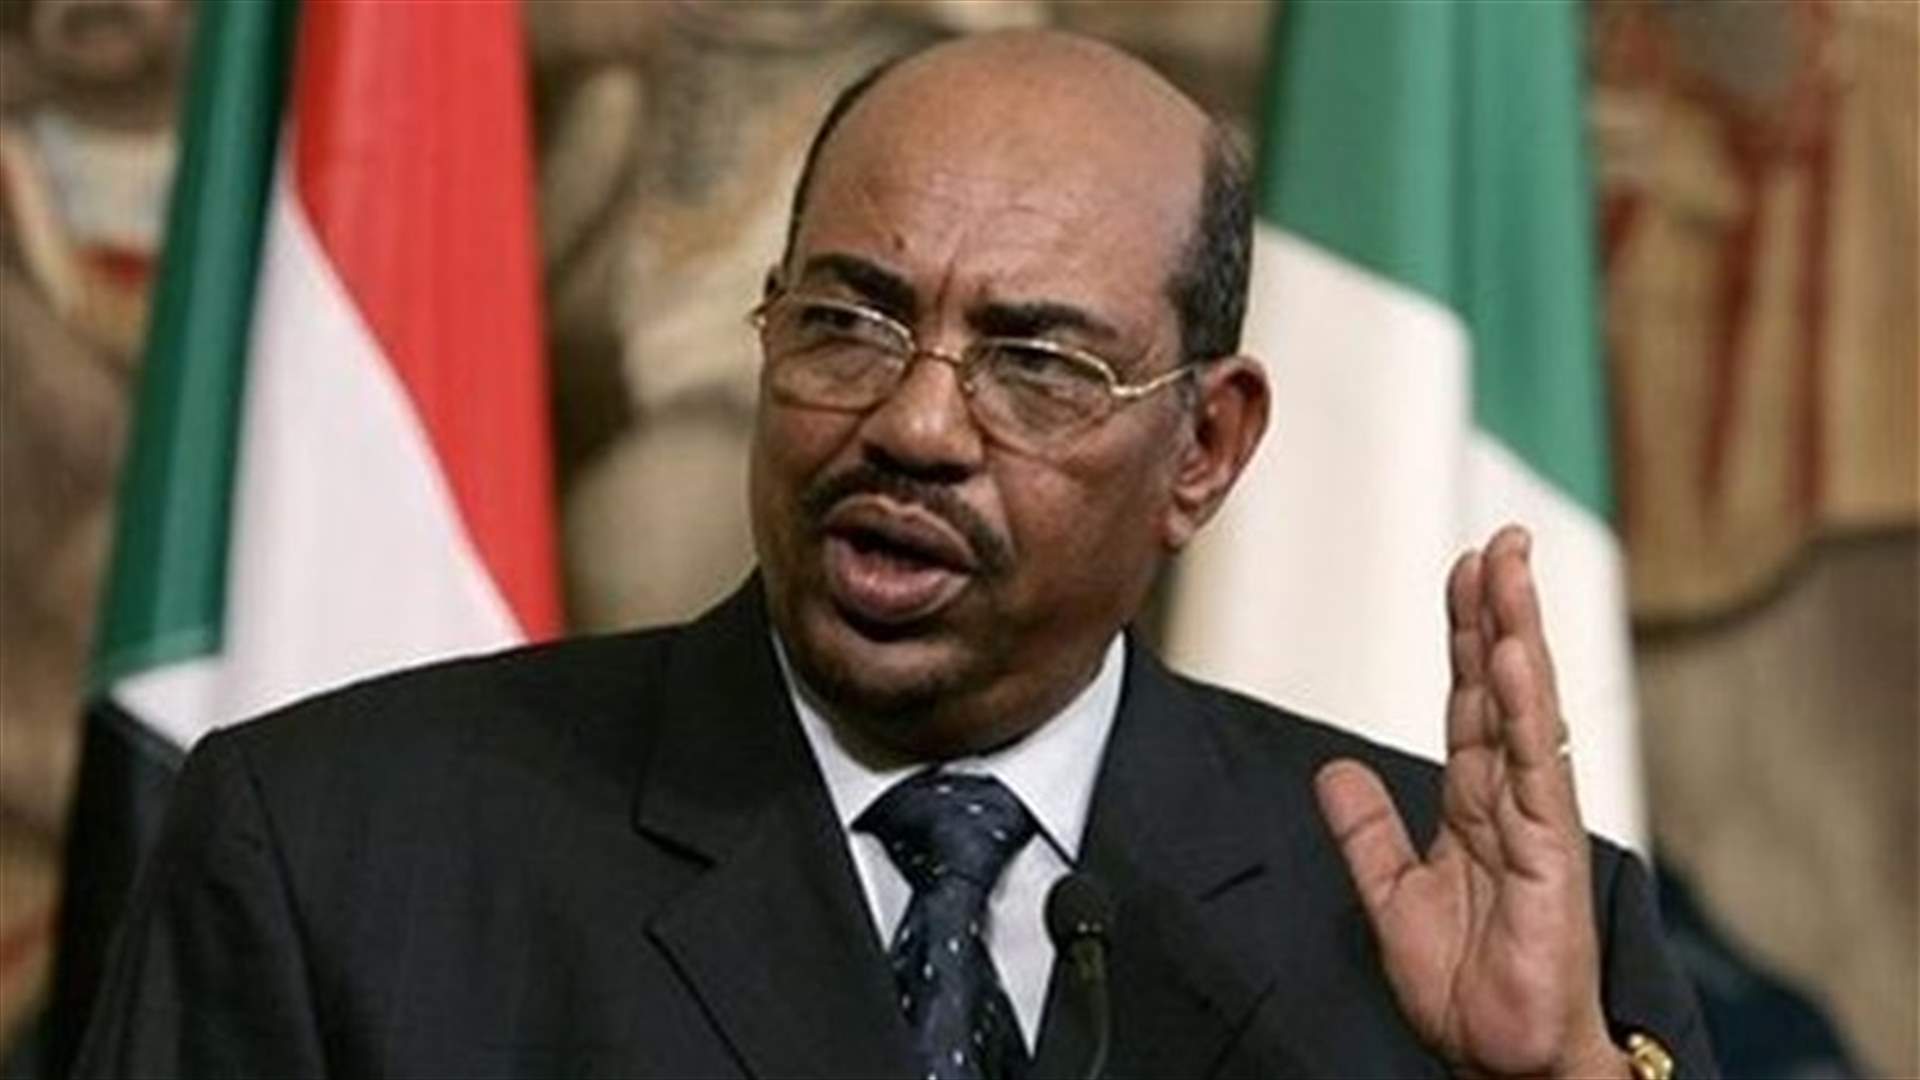 فوز البشير بانتخابات الرئاسة في السودان بـ94.5%